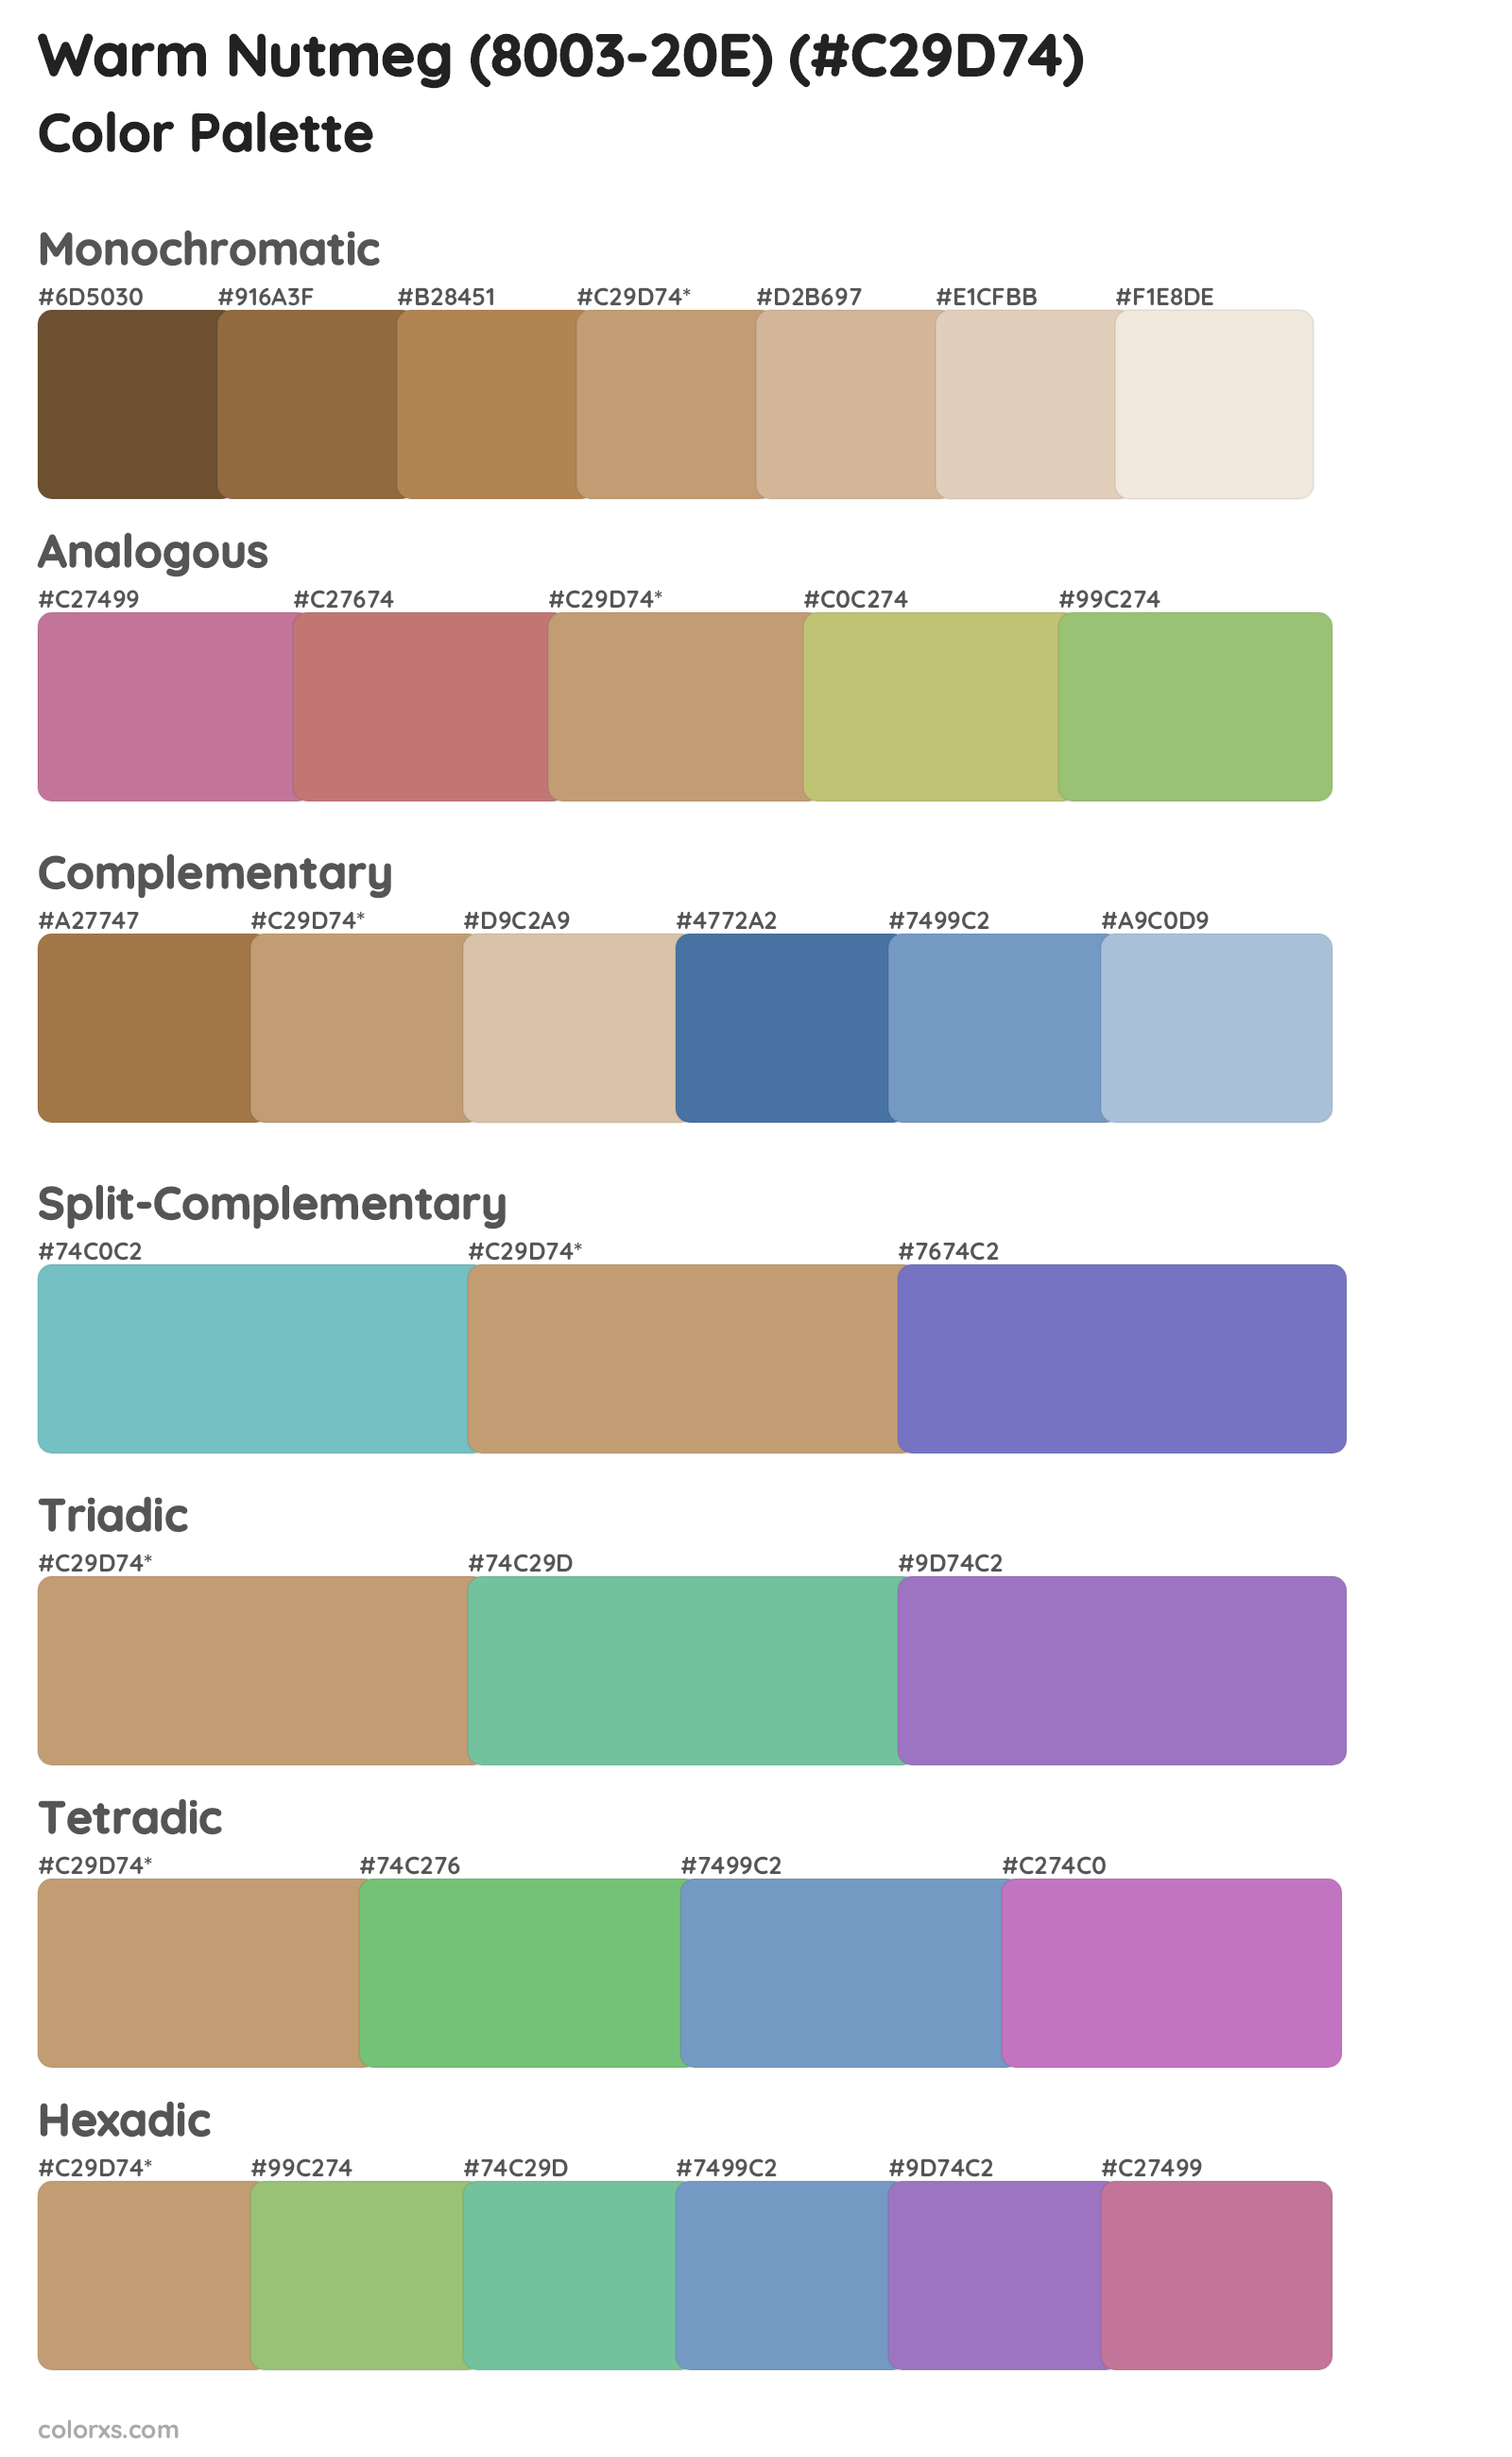 Warm Nutmeg (8003-20E) Color Scheme Palettes